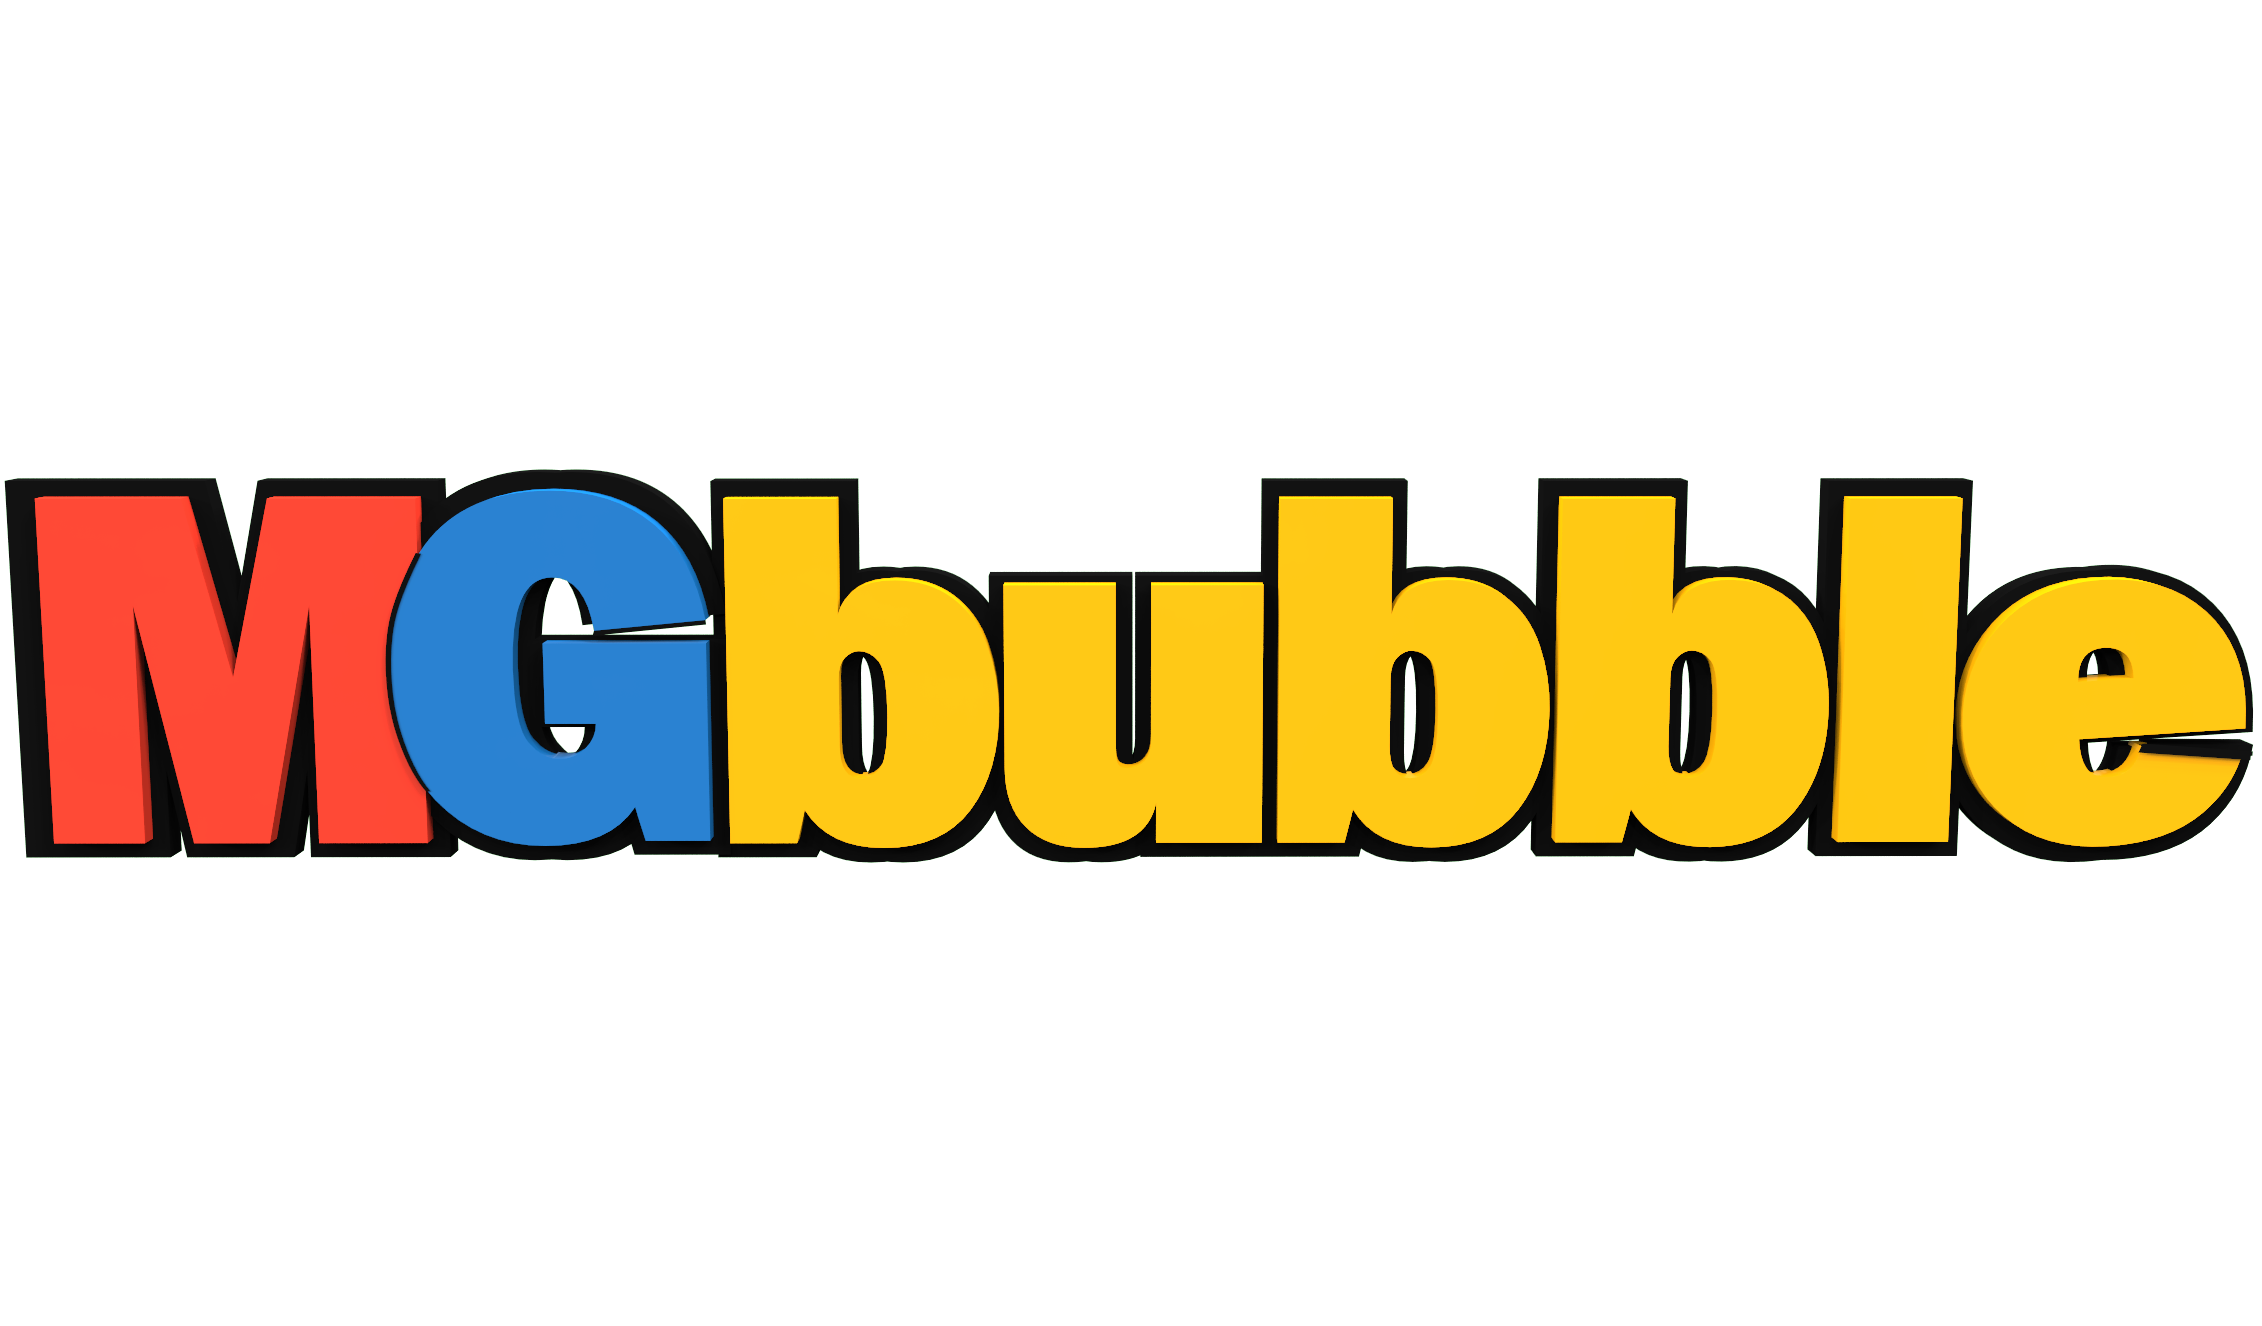 mgbubble